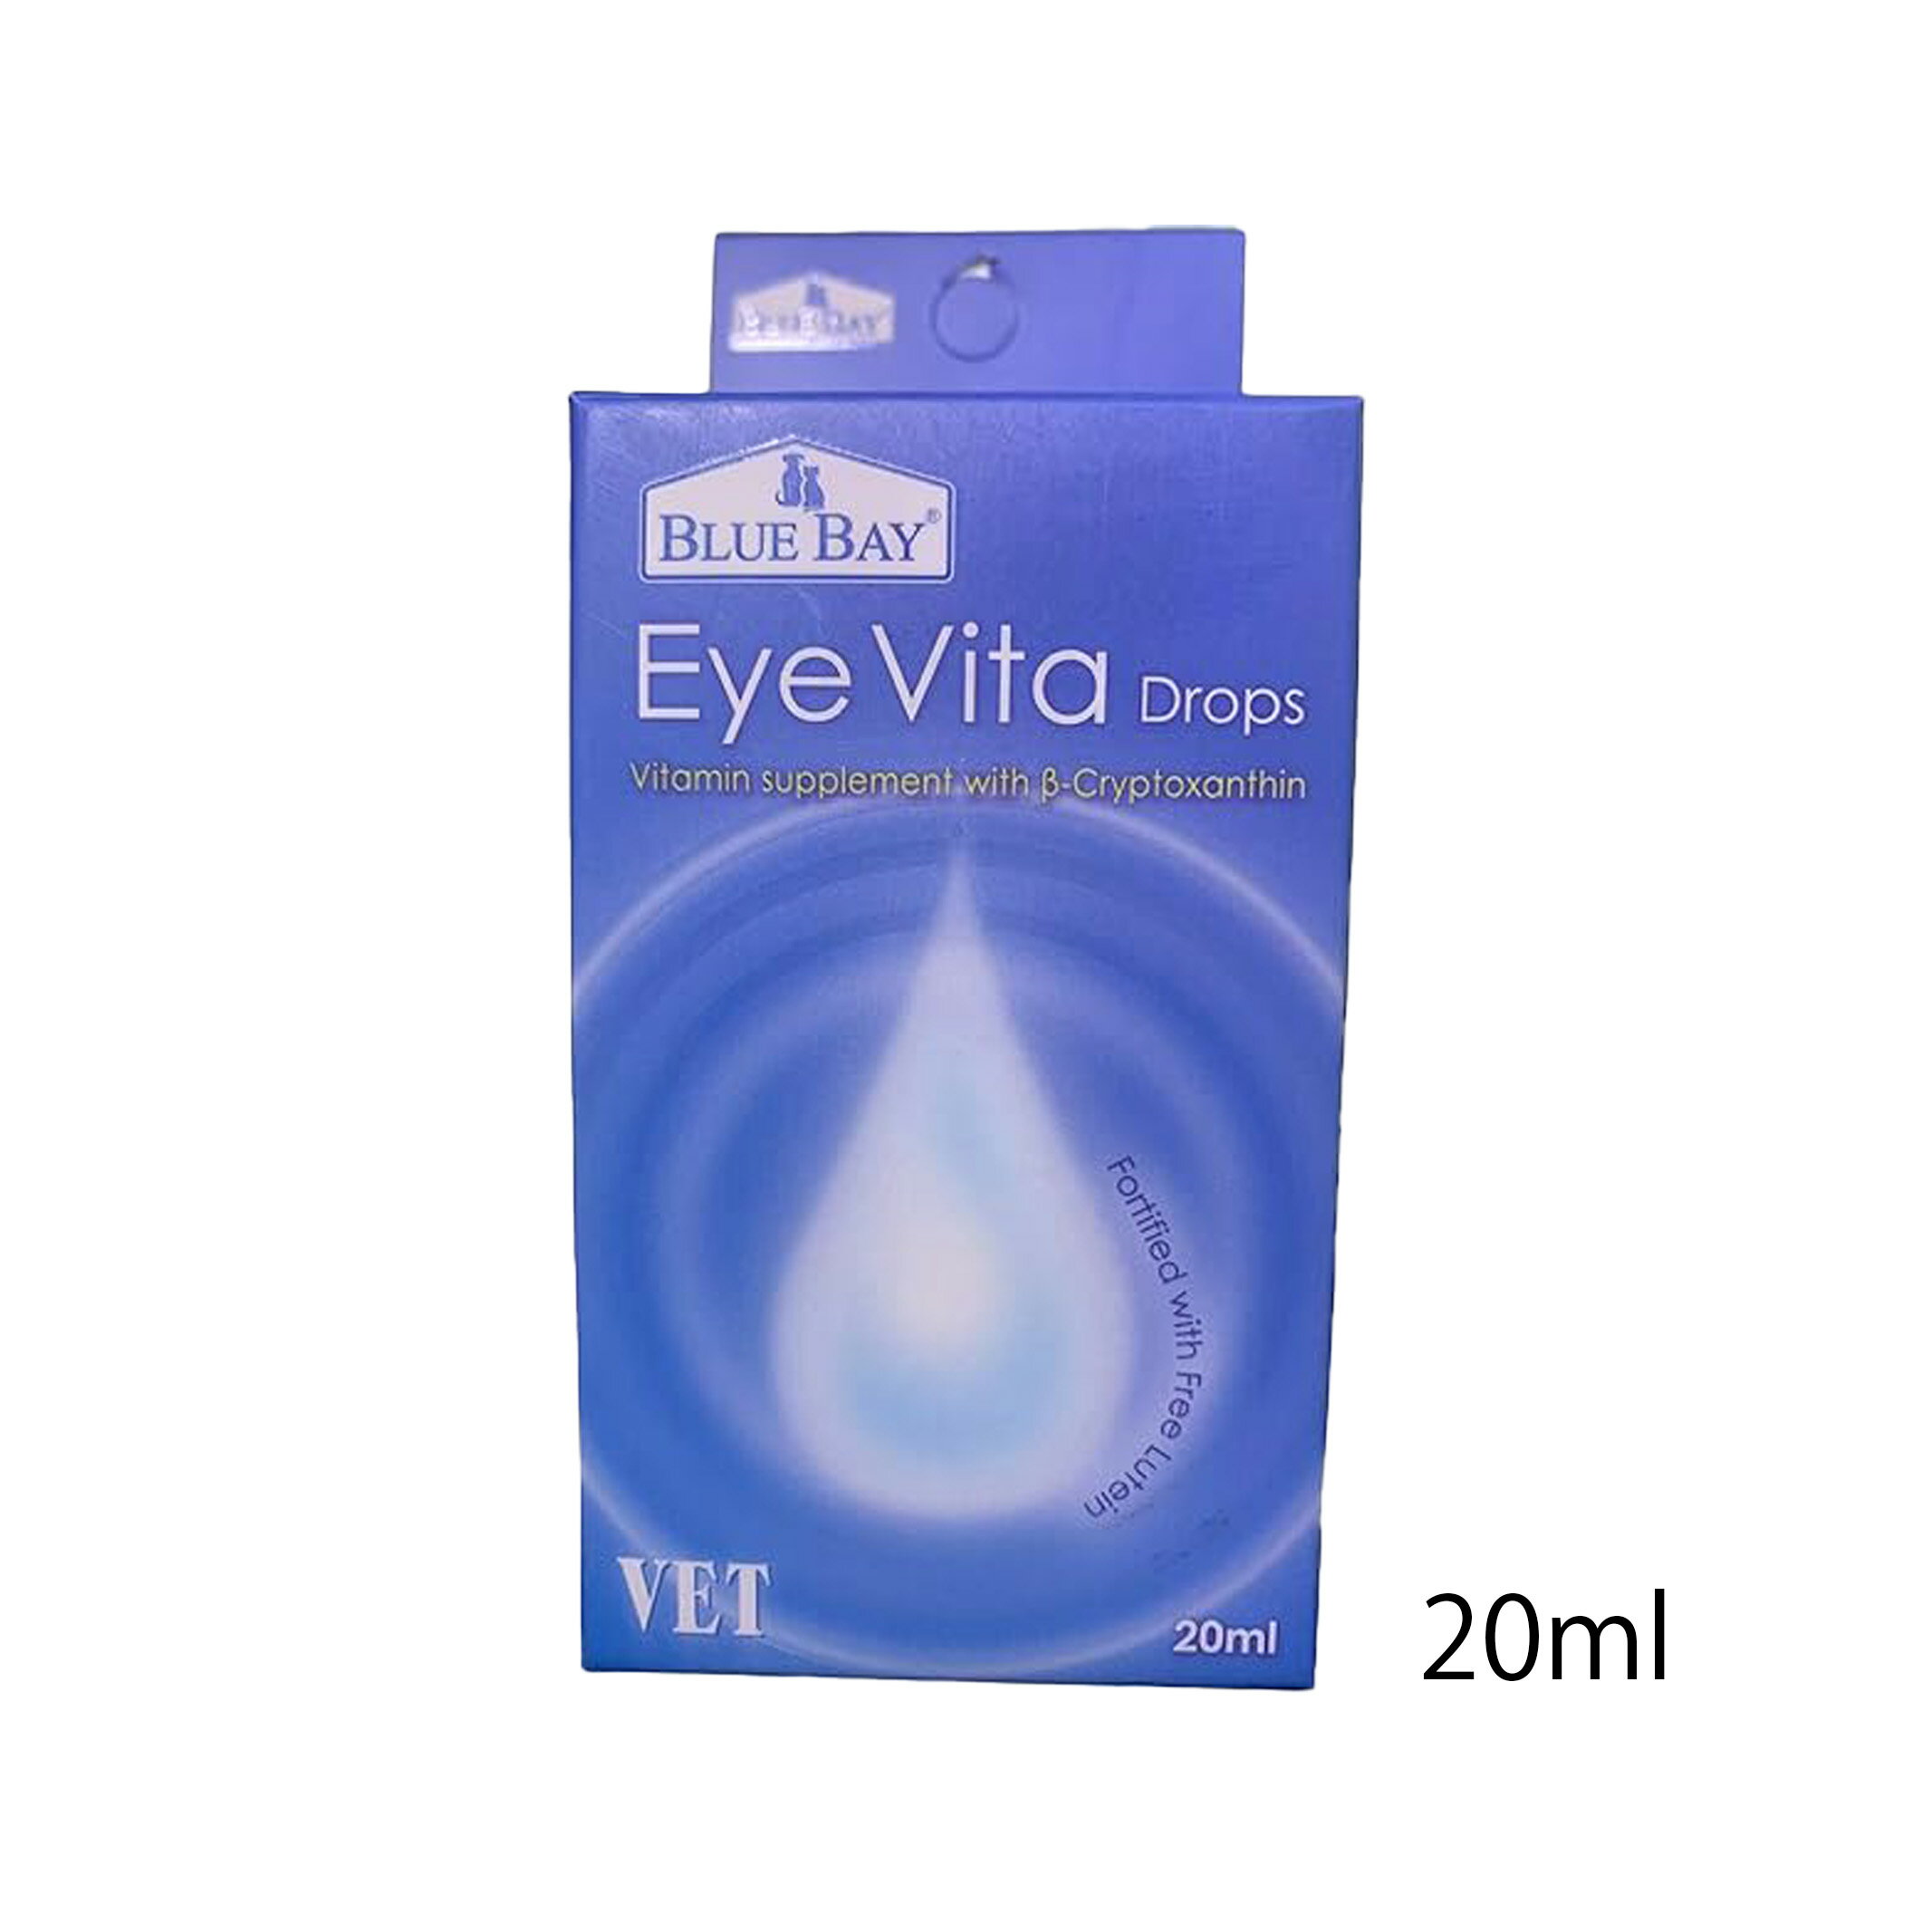 BLUE BAY Eye Vita Drops アイビタ 20ml (犬 目のケア ペット サプリメント 涙やけ 全犬種)【ビタミンサプリメント 目のケア】